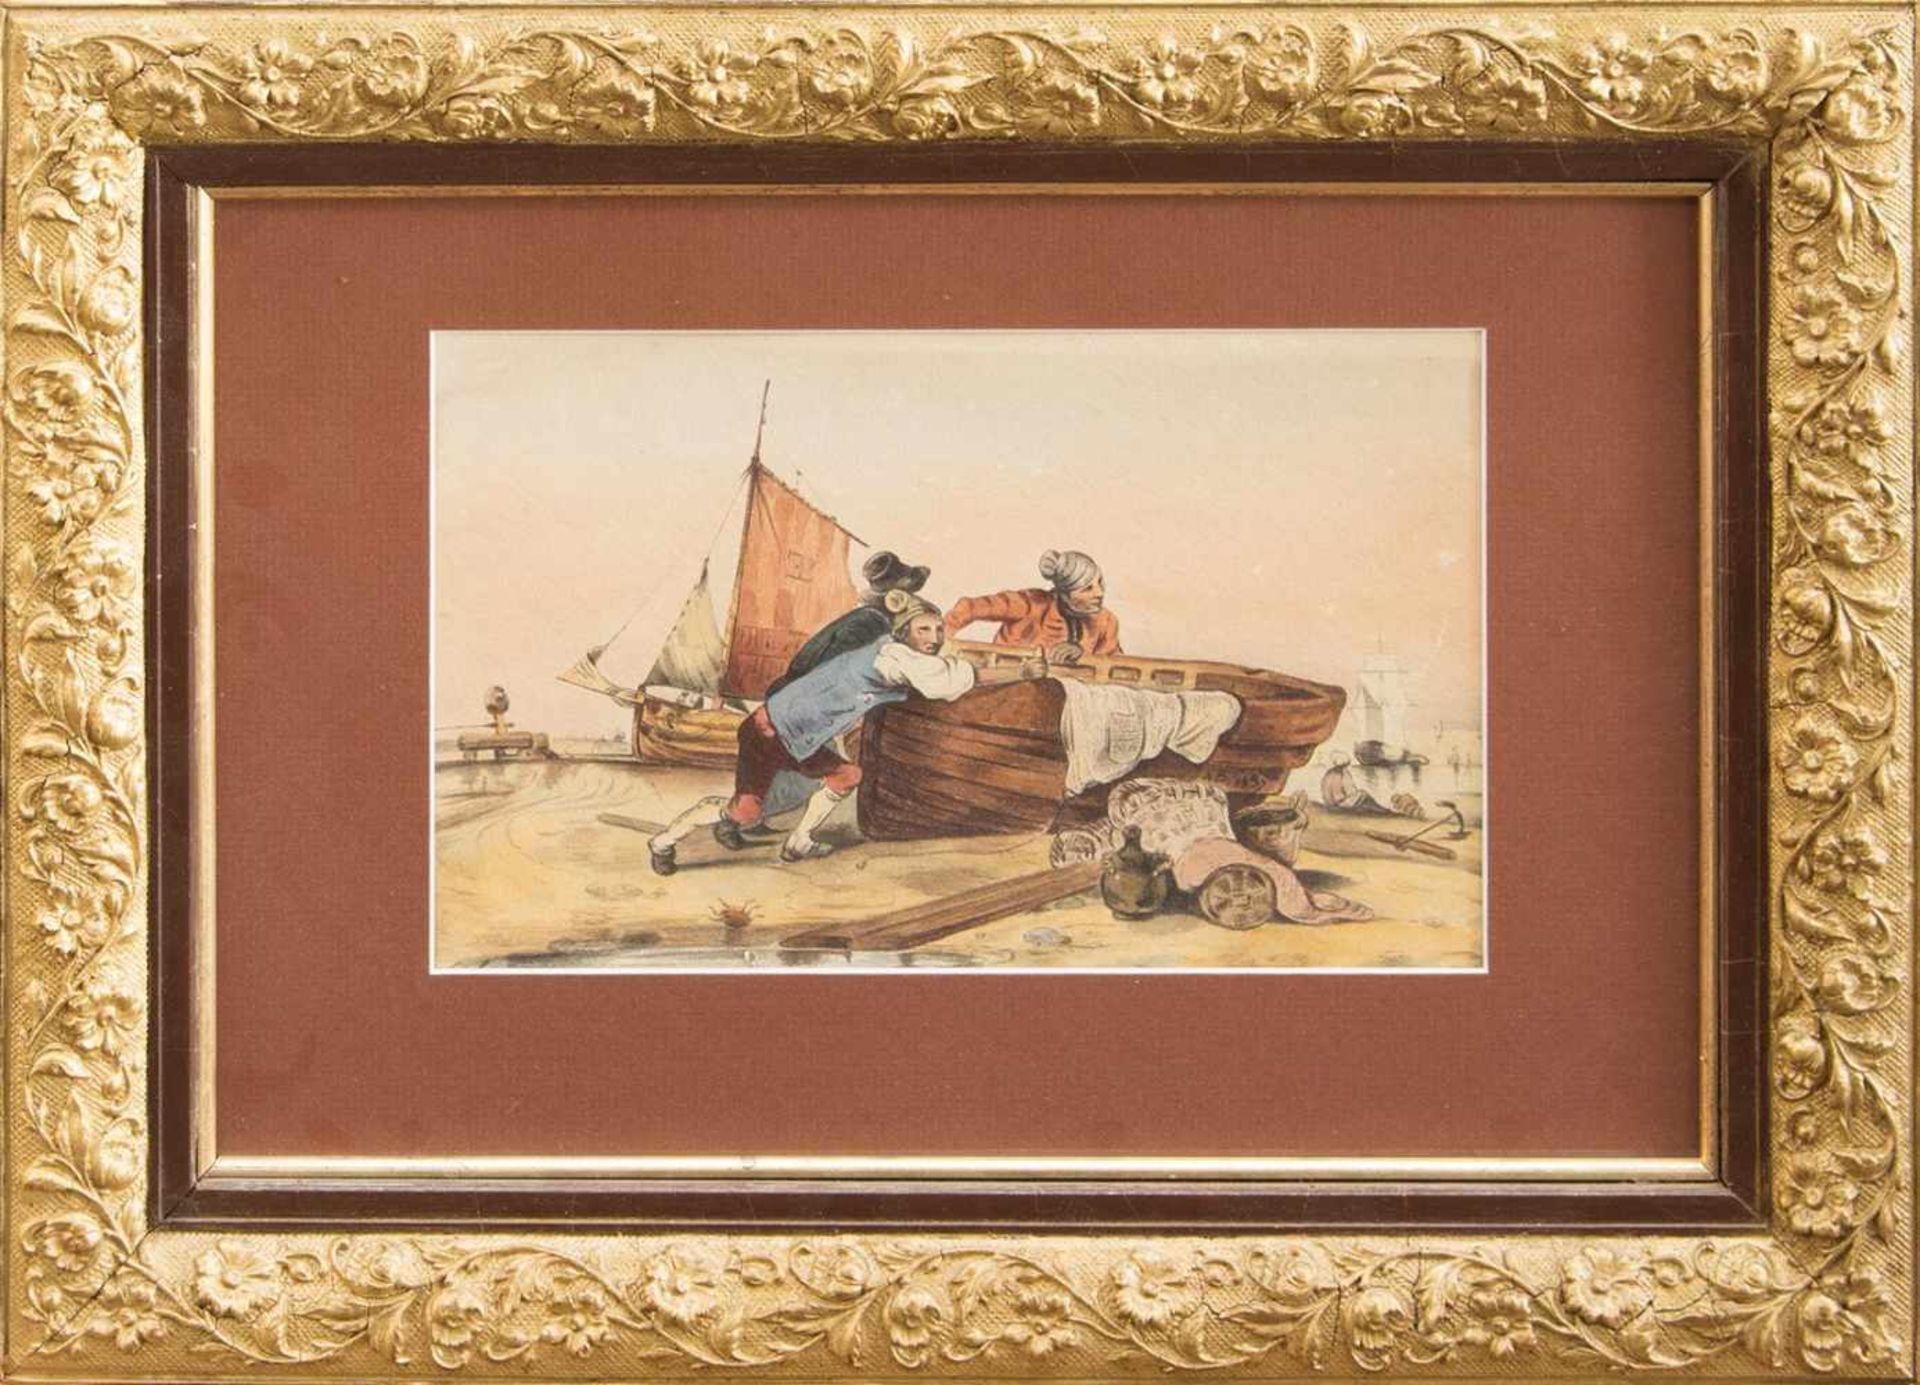 Monogrammist A.D.(Zeichner u. Aquarellist des 18./ 19. Jh.)Fischer mit ihren BootenAquarell, 16 x 25